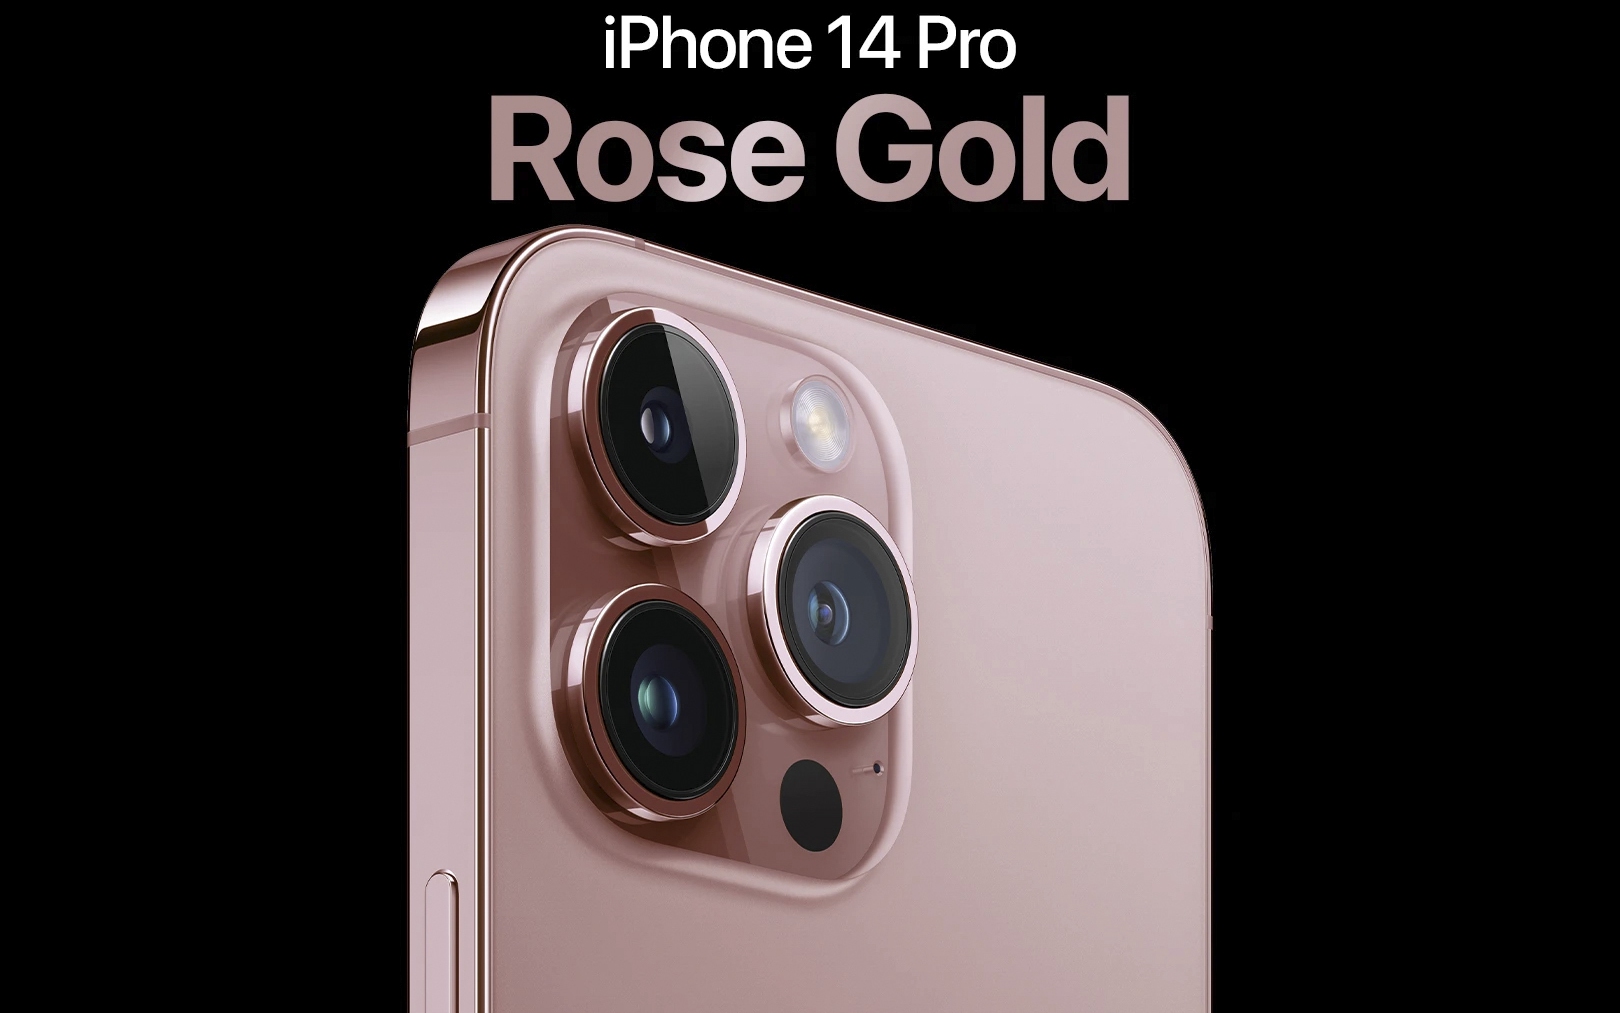 iPhone 14 Pro phiên bản hồng sẽ thổi cảm hứng mới vào cuộc sống của bạn với thiết kế đầy đủ tính năng và sự độc đáo của phong cách hồng. Hãy tận hưởng những tính năng cao cấp nhất với màn hình OLED Super Retina XDR, hỗ trợ 5G và nhiều thứ đáng kinh ngạc khác.